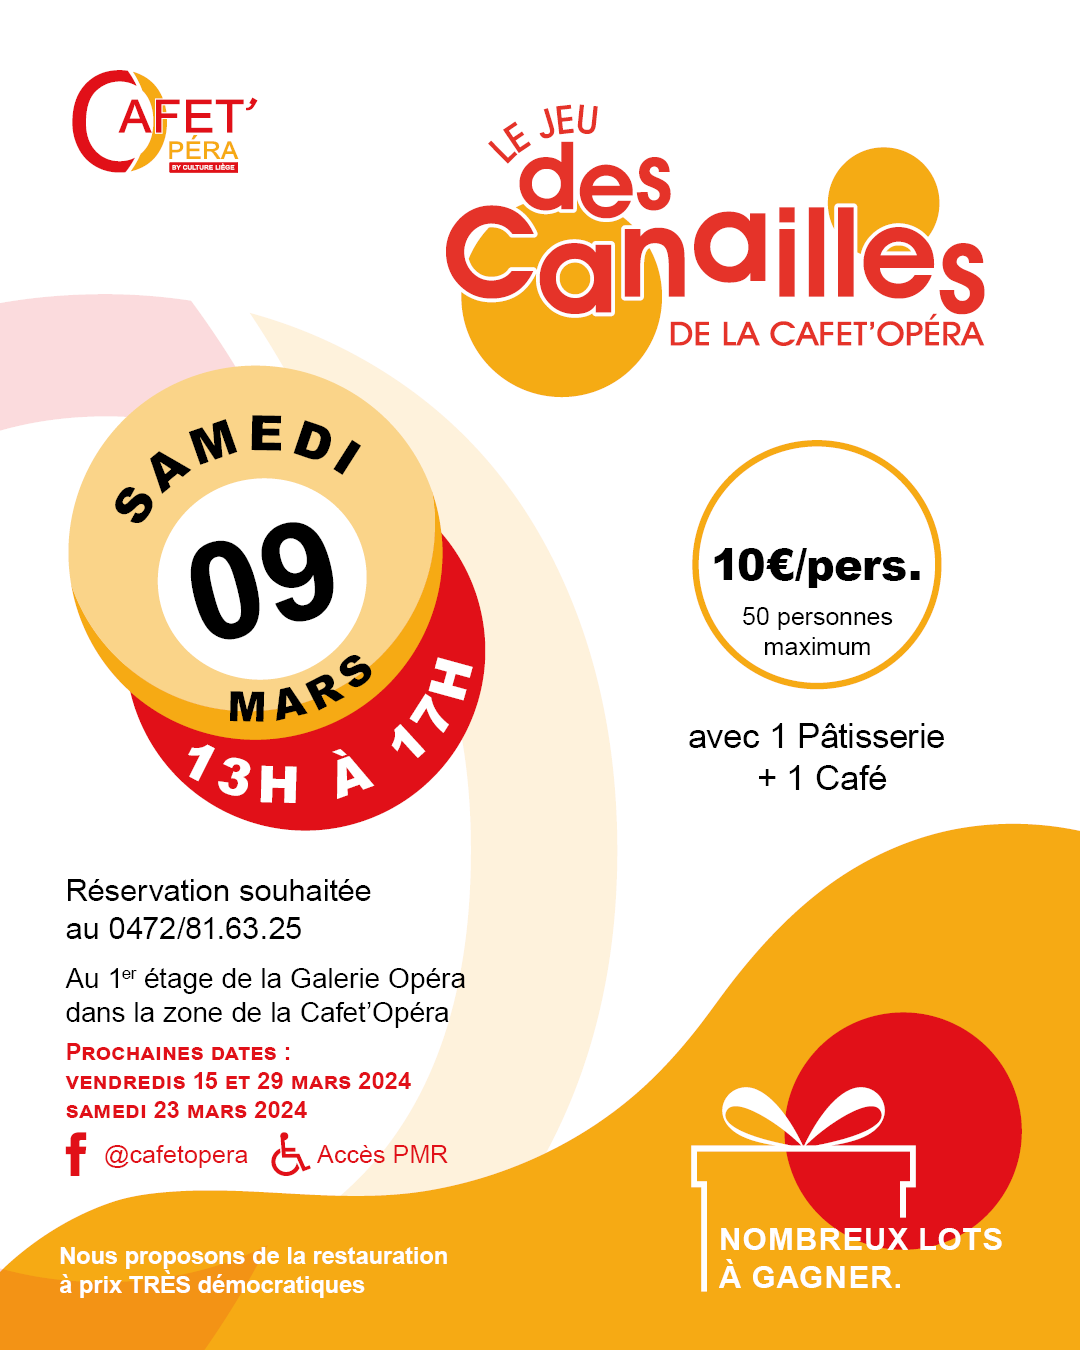 Le jeu des Canailles de la Cafet Opéra à LIEGE